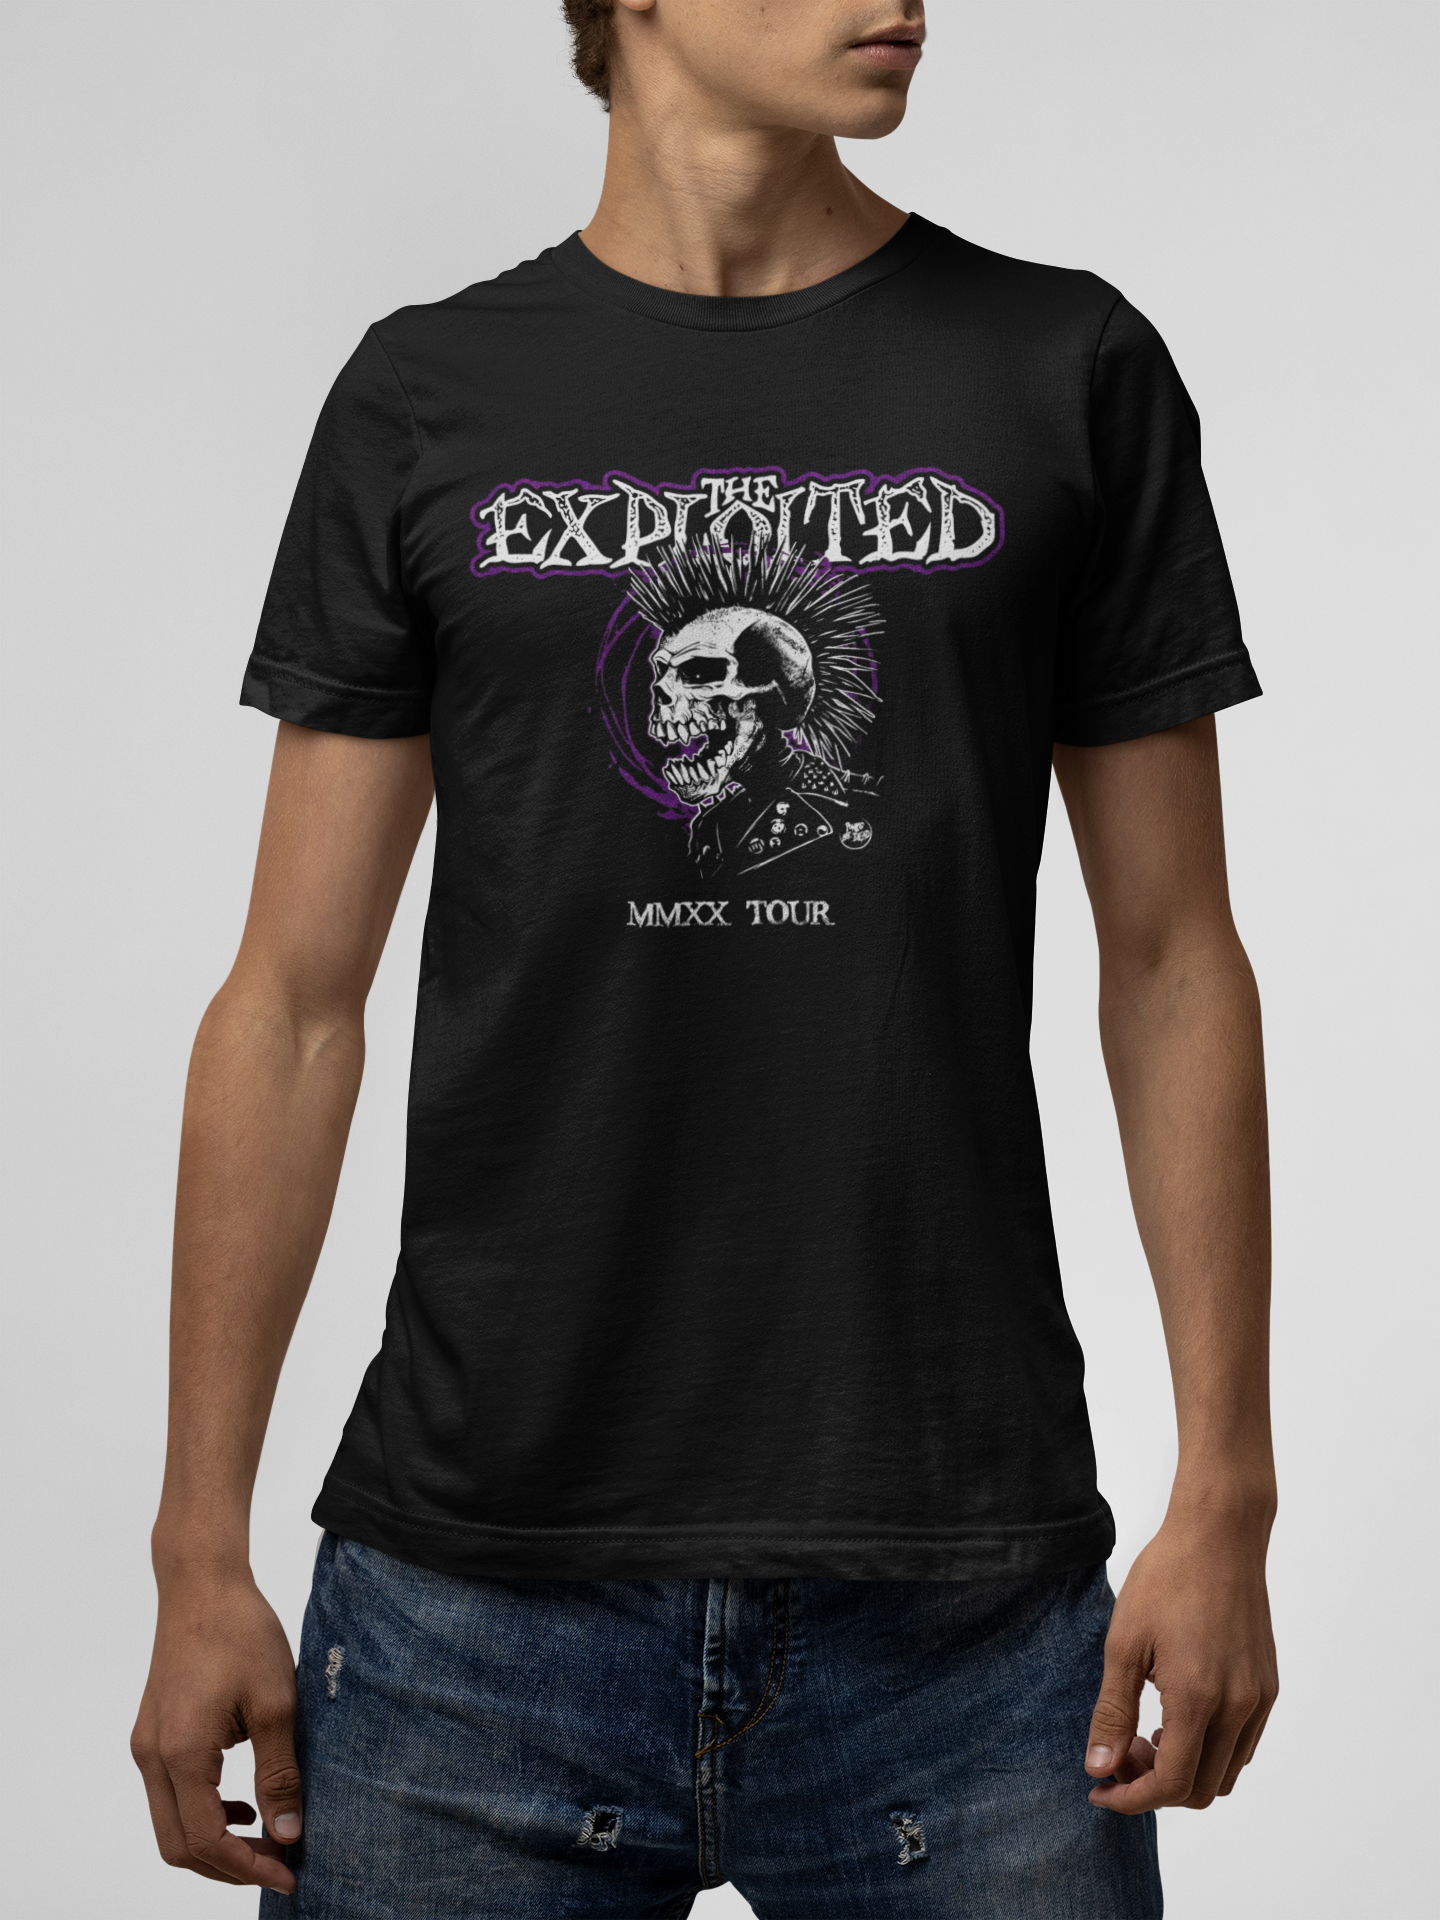 The Exploited Black T-Shirt For Men